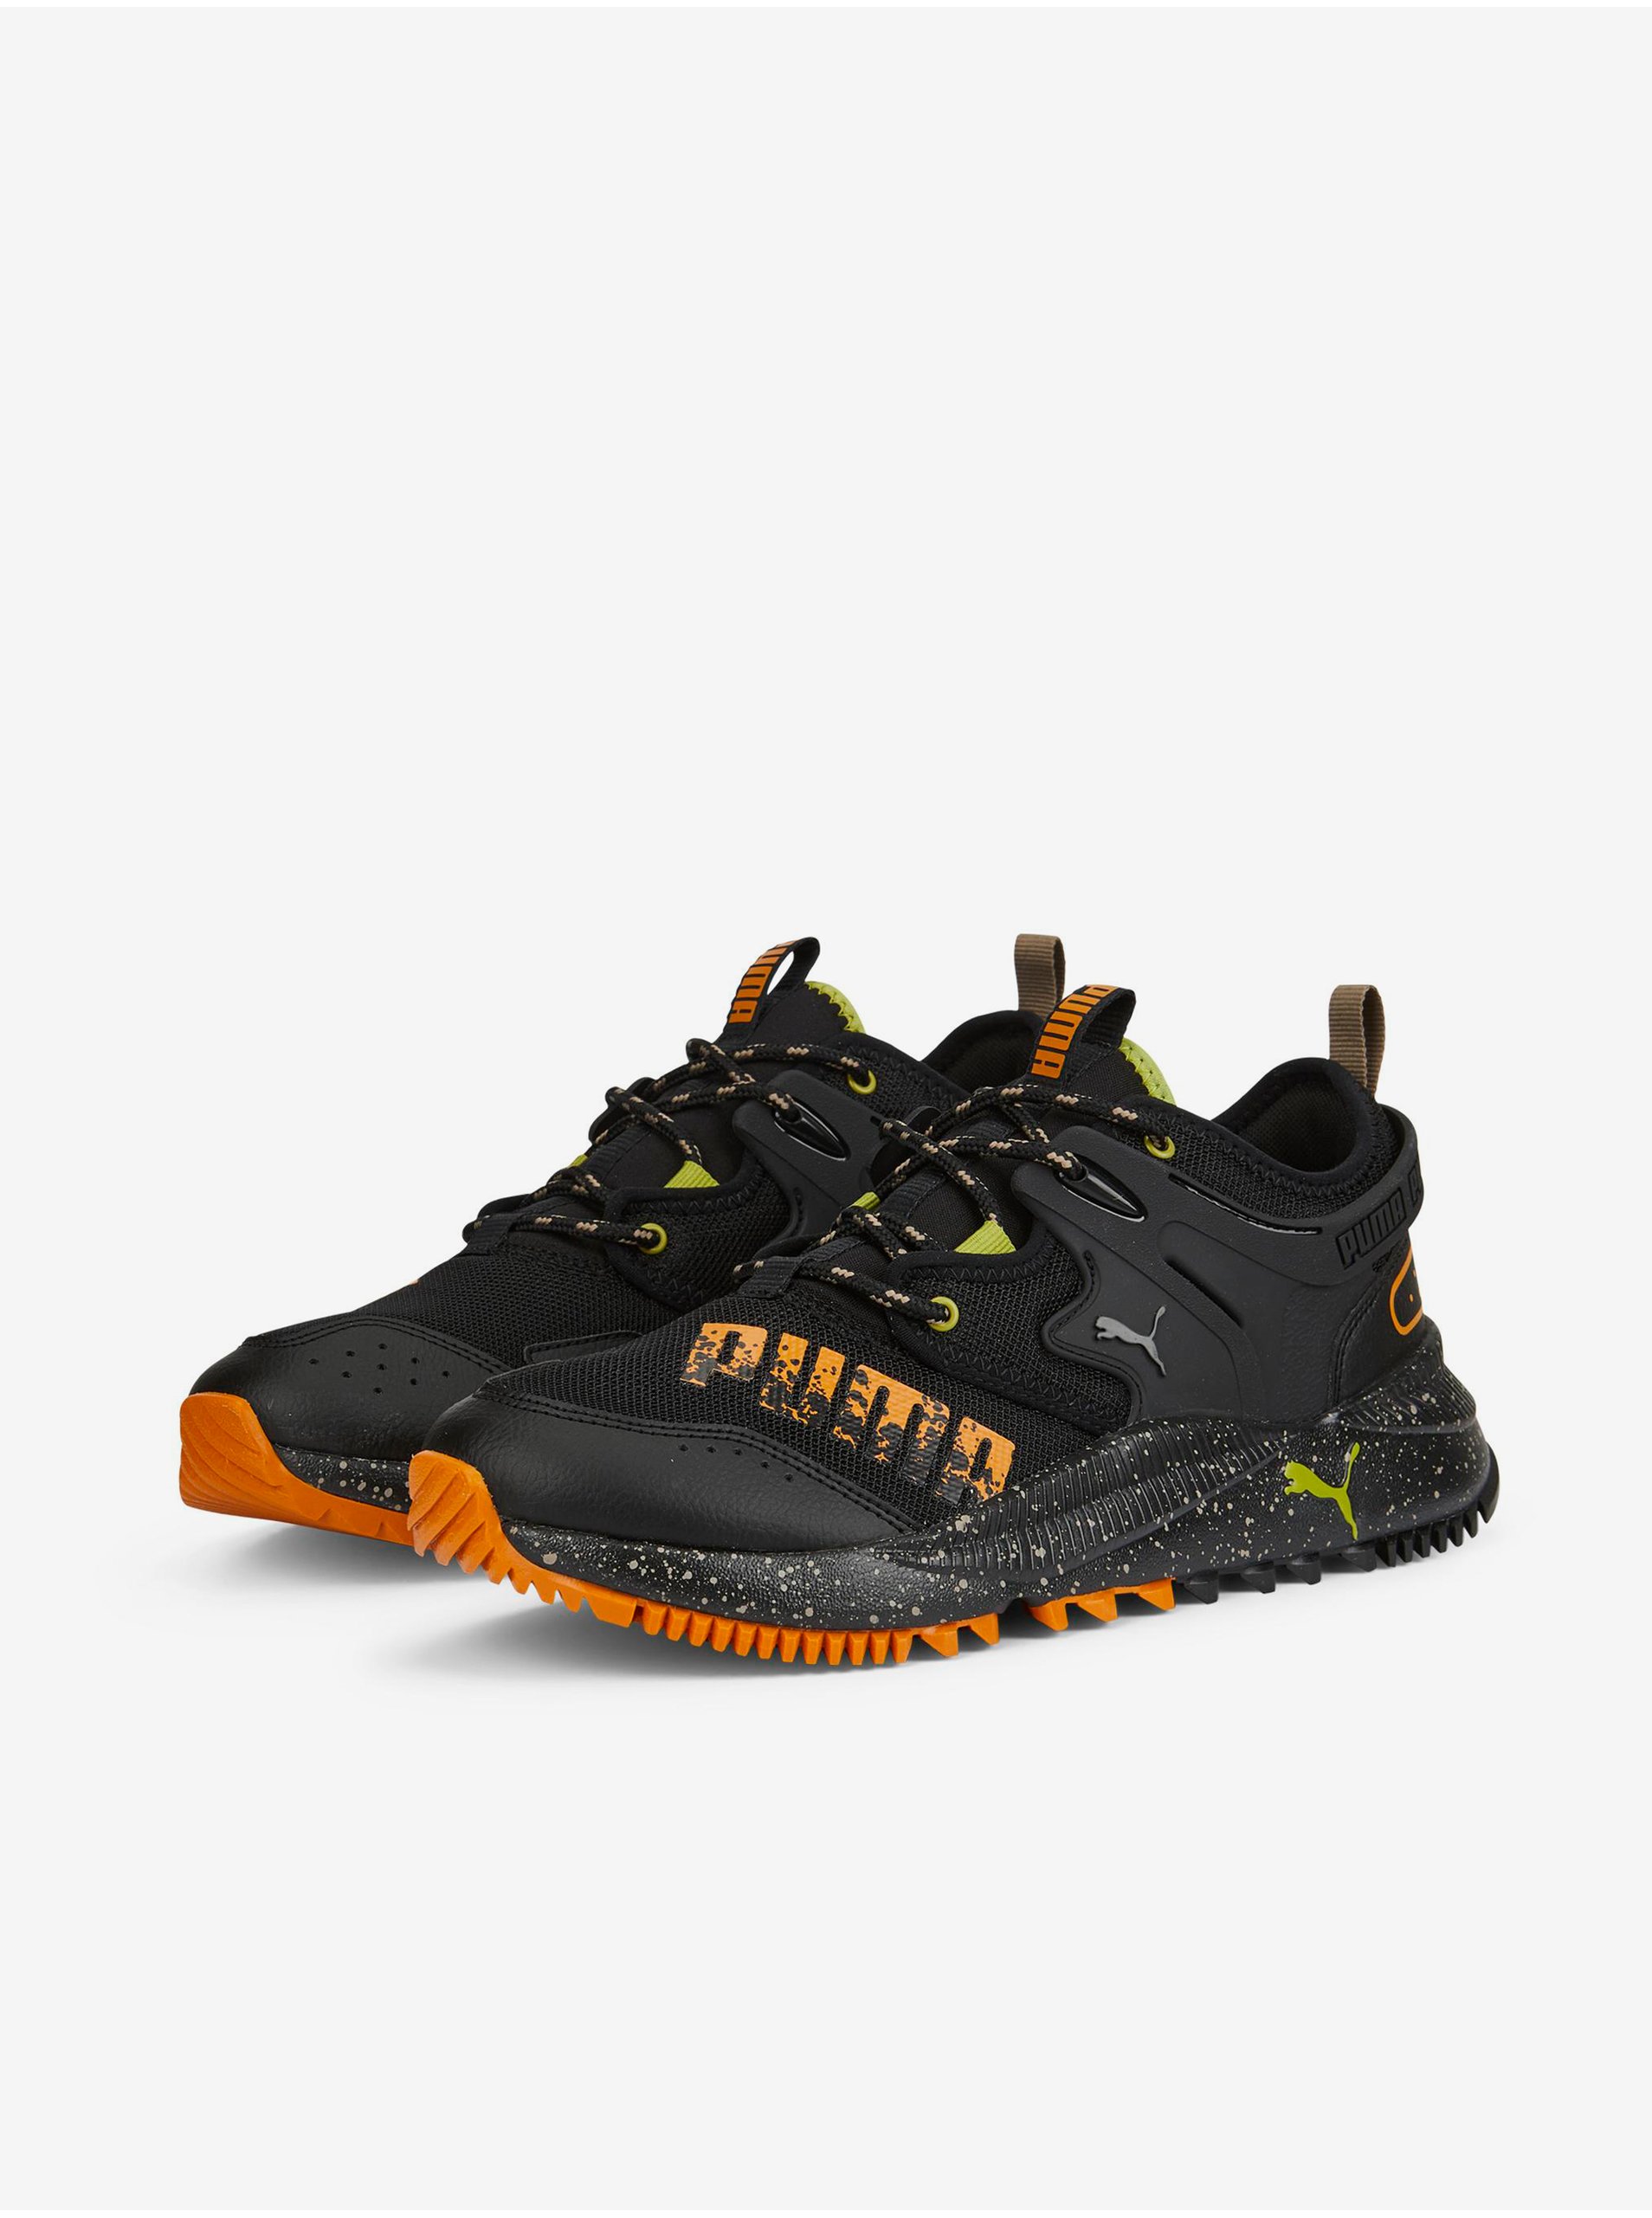 Lacno Topánky pre mužov Puma - čierna, oranžová, svetlozelená